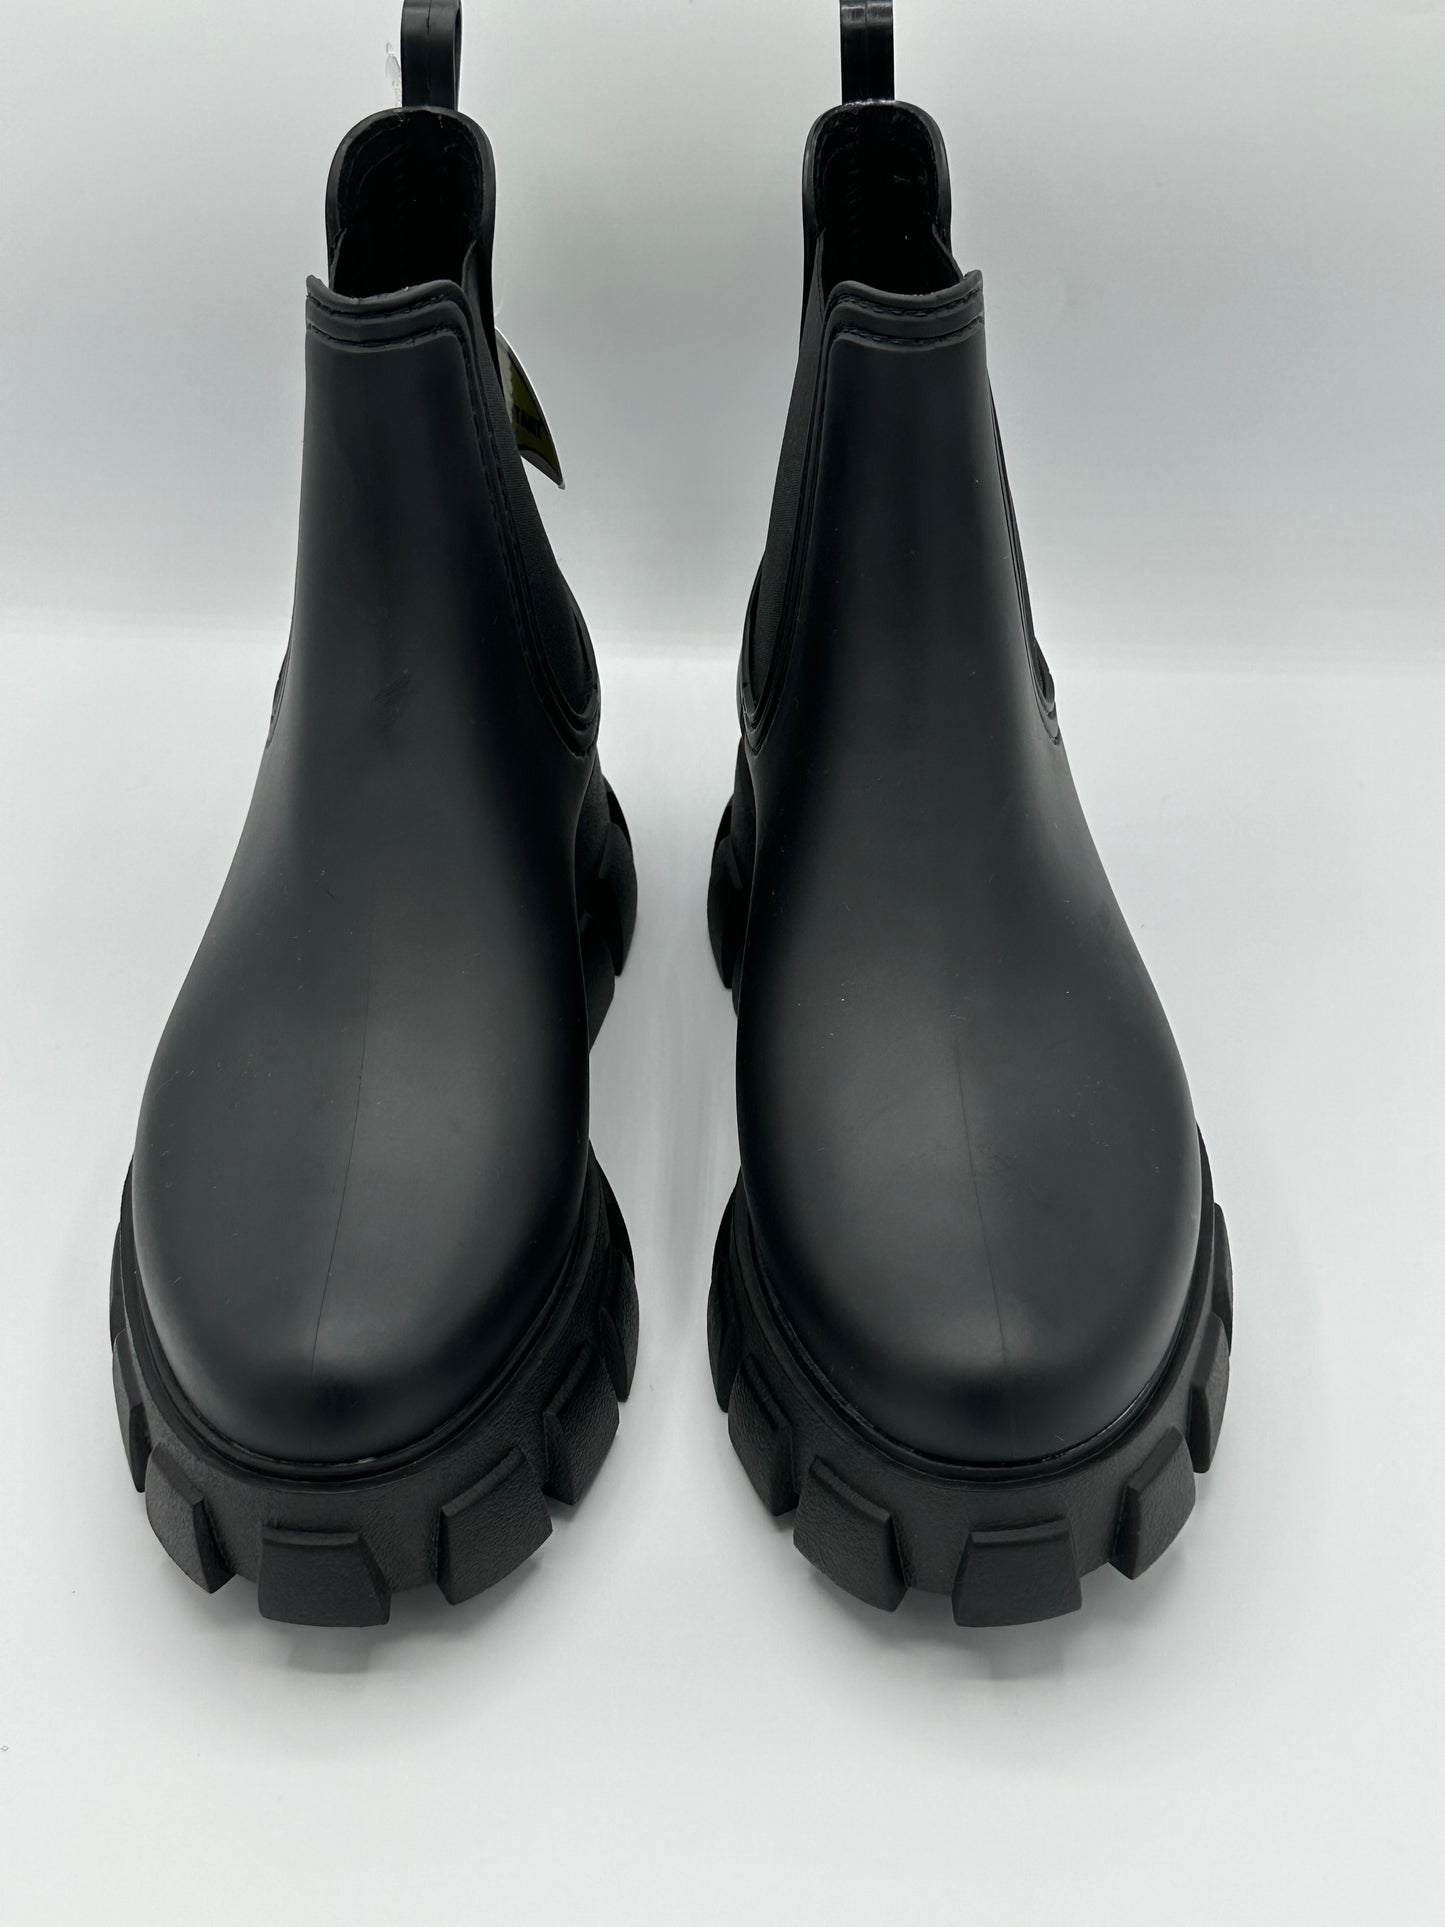 Jeffrey Campbell Women's Raindrop Chelsea Boot in Black Matte